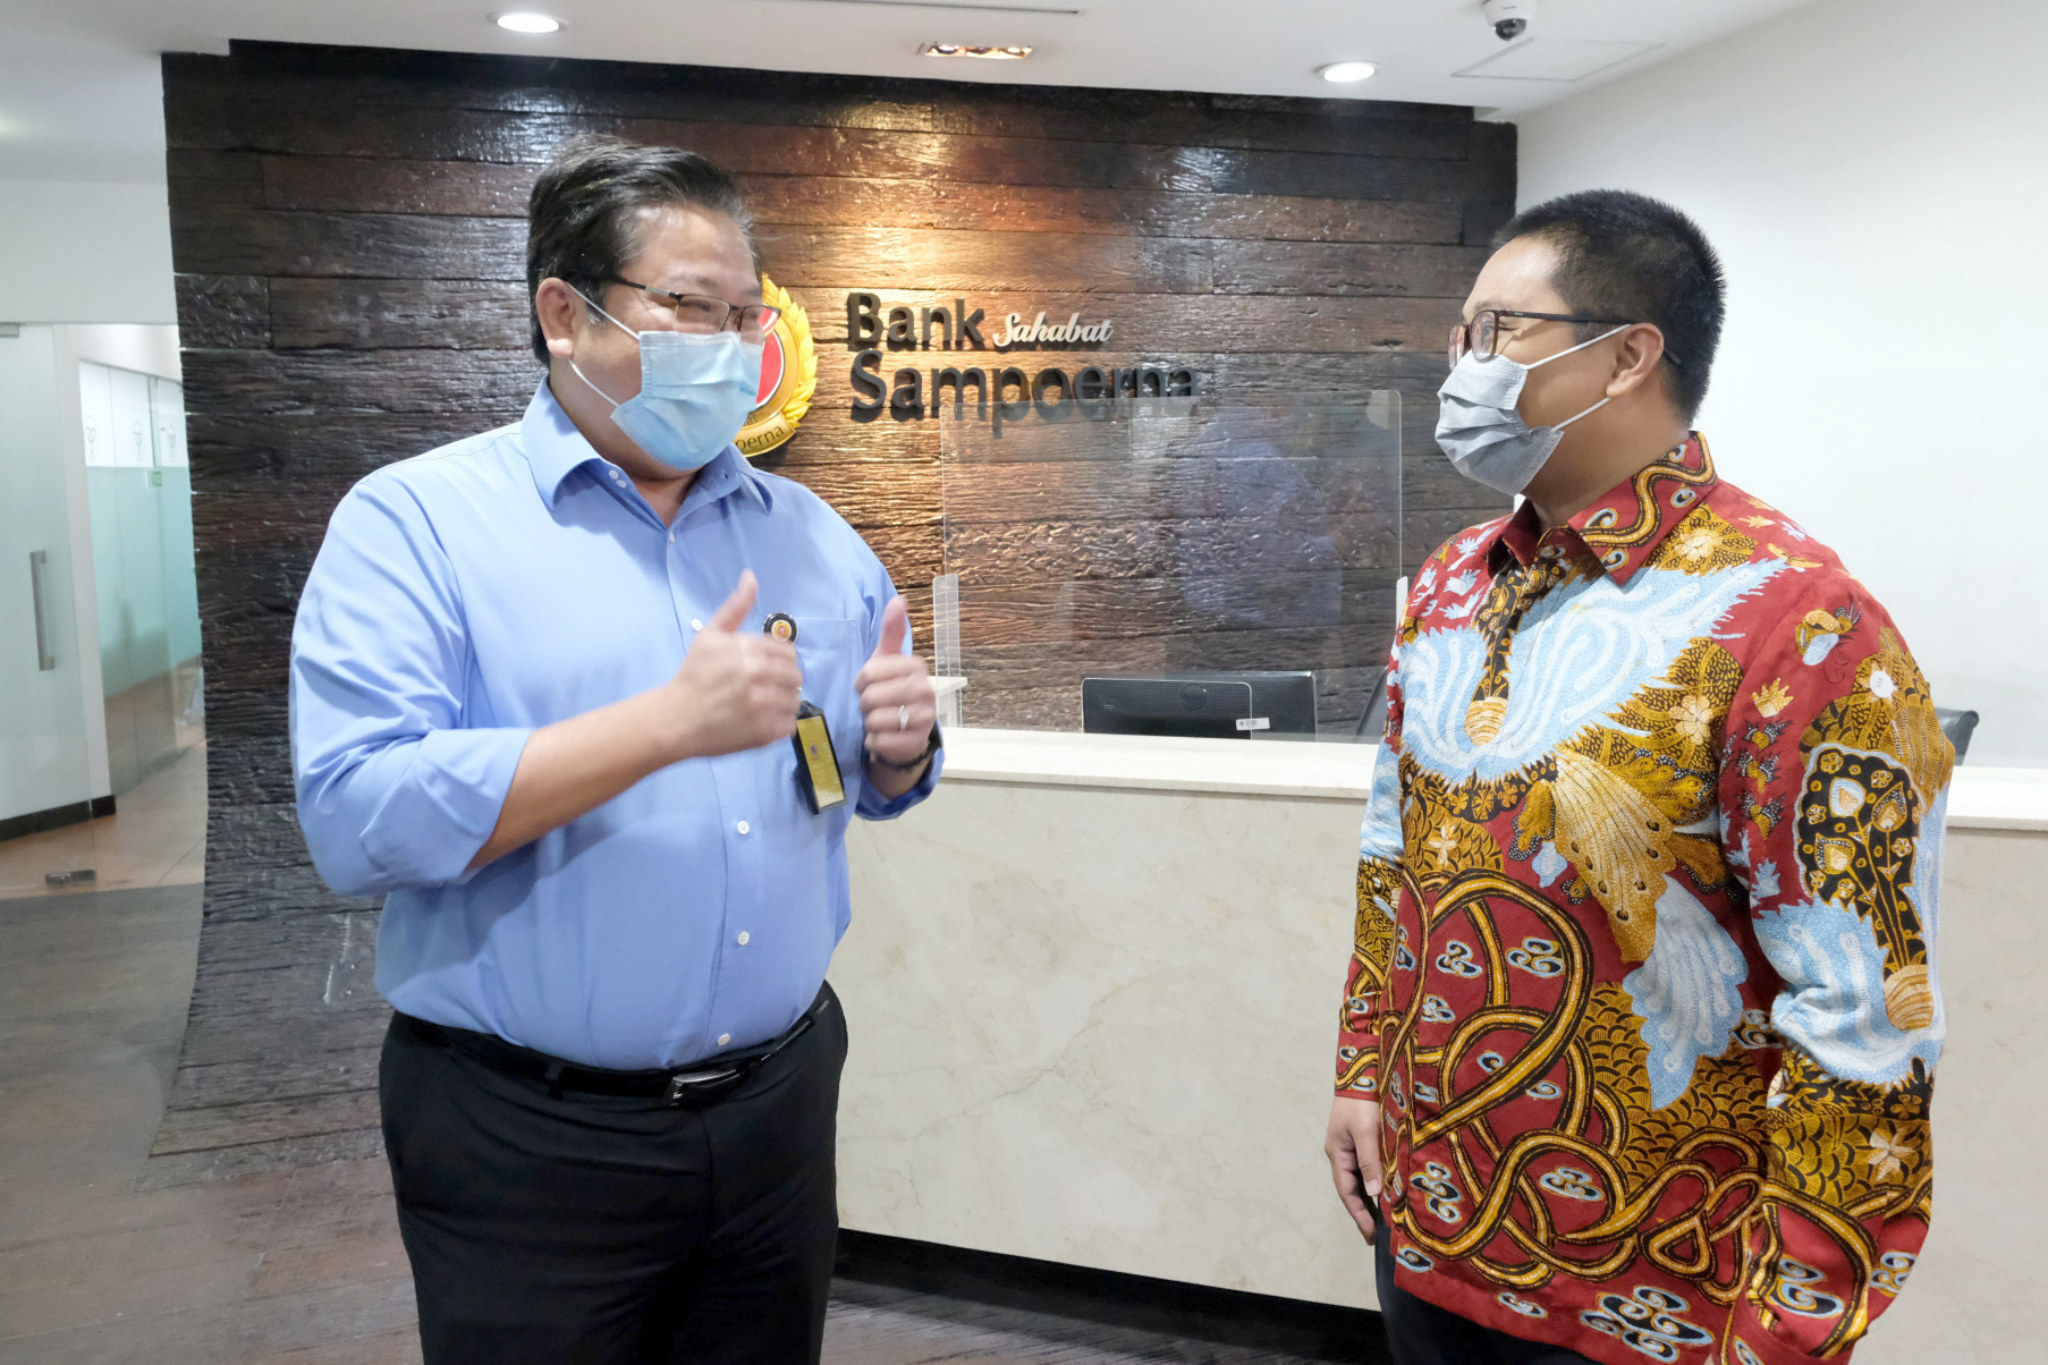 <p>CEO dan Founder UangTeman Aidil Zulkifli (kanan) berbincang dengan Chief of SME, Funding, FI &amp; Network Bank Sahabat Sampoerna (Bank Sampoerna) Adji Anggono (kiri) usai penandatanganan kolaborasi strategis penyaluran pembiayaan usaha mikro antara UangTeman dan Bank Sampoerna di Jakarta, Rabu, 7 Oktober 2020. Melalui kerja sama ini, UangTeman mendapatkan komitmen pembiayaan yang signifikan dari Bank Sampoerna untuk mendorong optimalisasi penyaluran pembiayaan usaha mikro kepada masyarakat dalam mendukung pemulihan ekonomi masyarakat Indonesia di tengah pandemi Coronavirus disease (COVID-19). Kemitraan ini menandakan peranan fintech lending_ yang dapat menyasar masyarakat luas dengan lebih akurat dan cepat, khususnya usaha mikro dan kecil yang dapat menjadi pendorong dalam pemulihan ekonomi nasional Indonesia. Foto: Ismail Pohan/TrenAsia</p>
